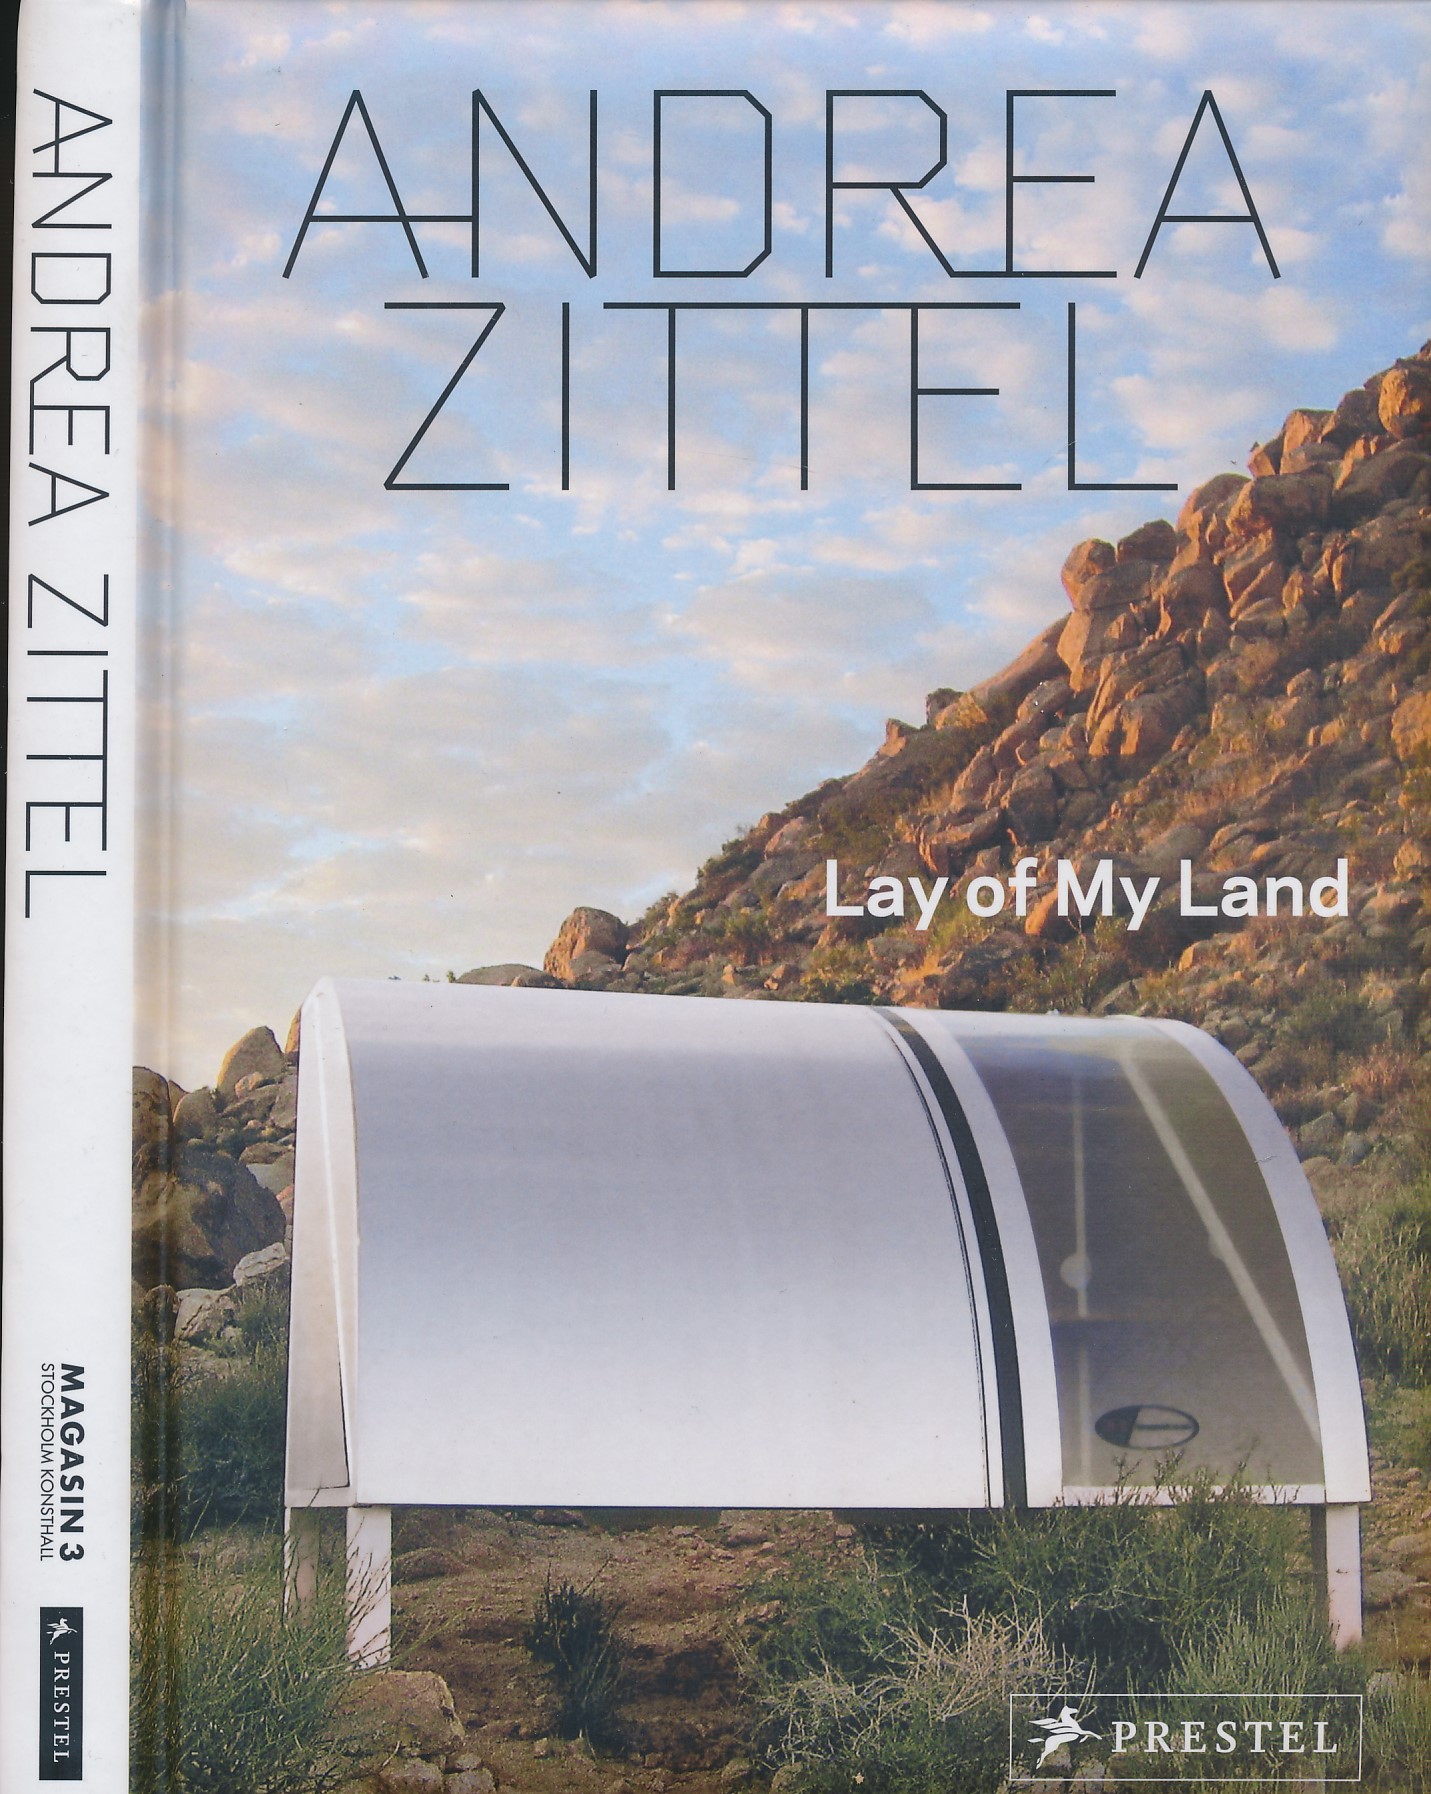 Andrea Zittel: Lay of My Land